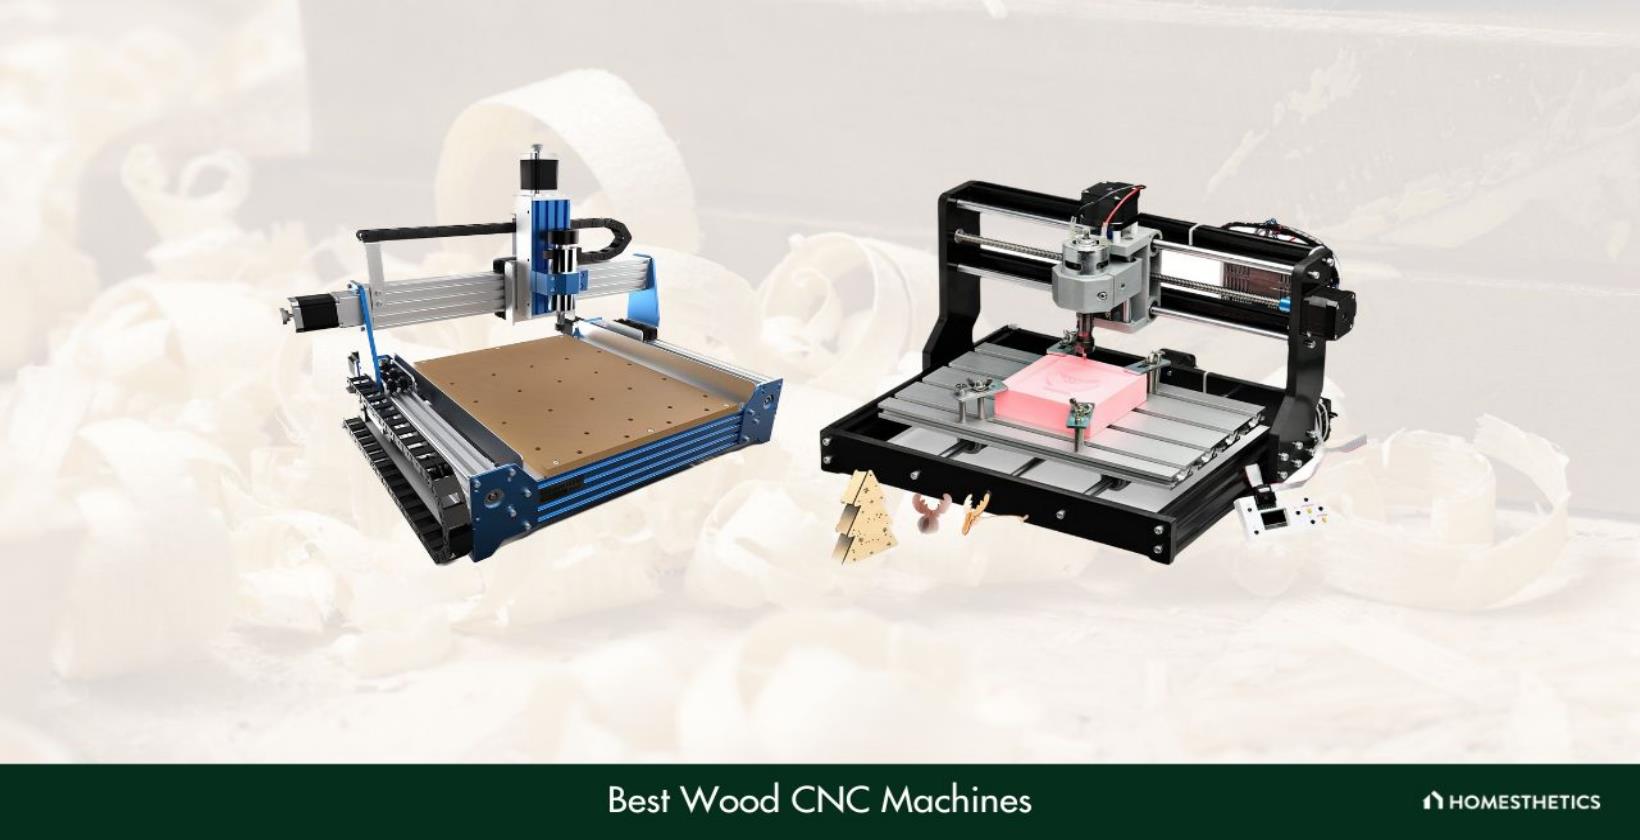 Best Wood CNC Machines